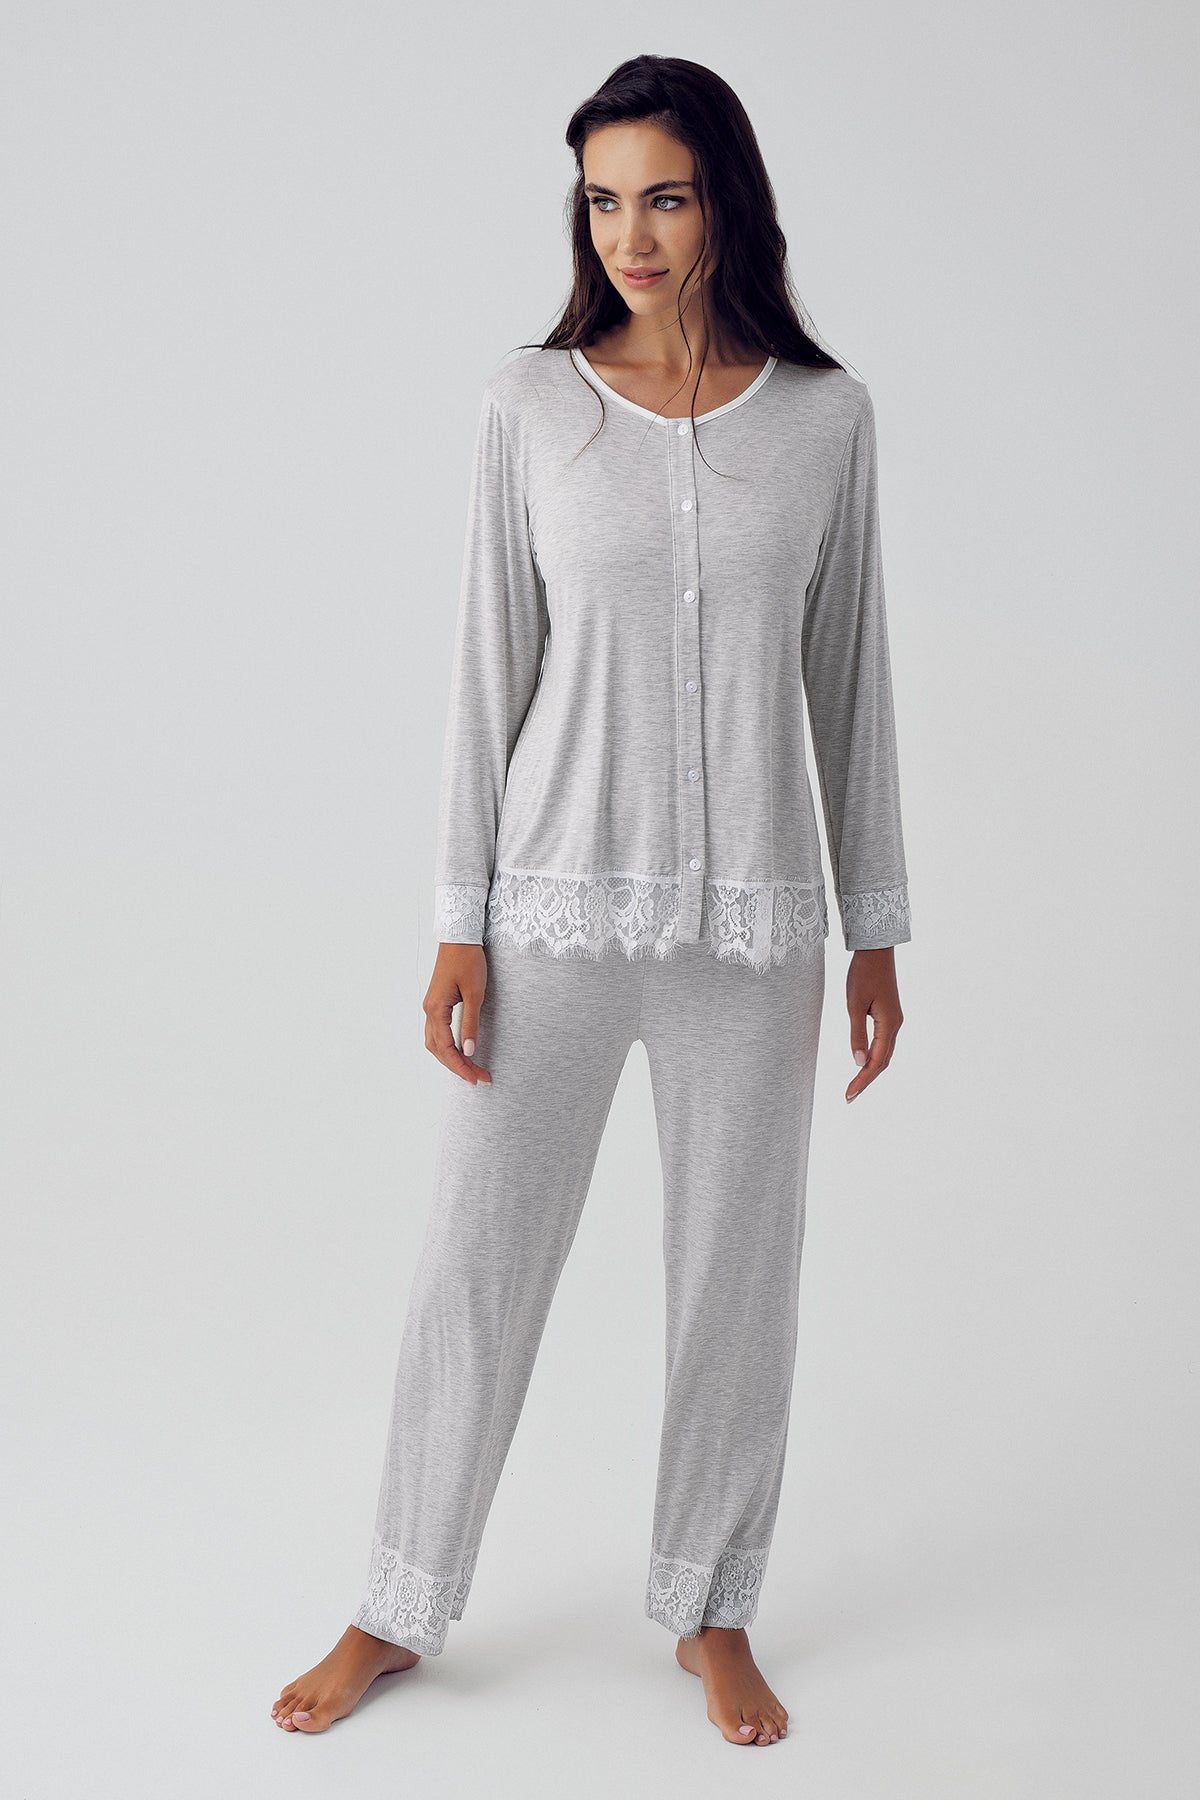 Shopymommy 15203 Melange Lace Maternity & Nursing Pajamas Grey